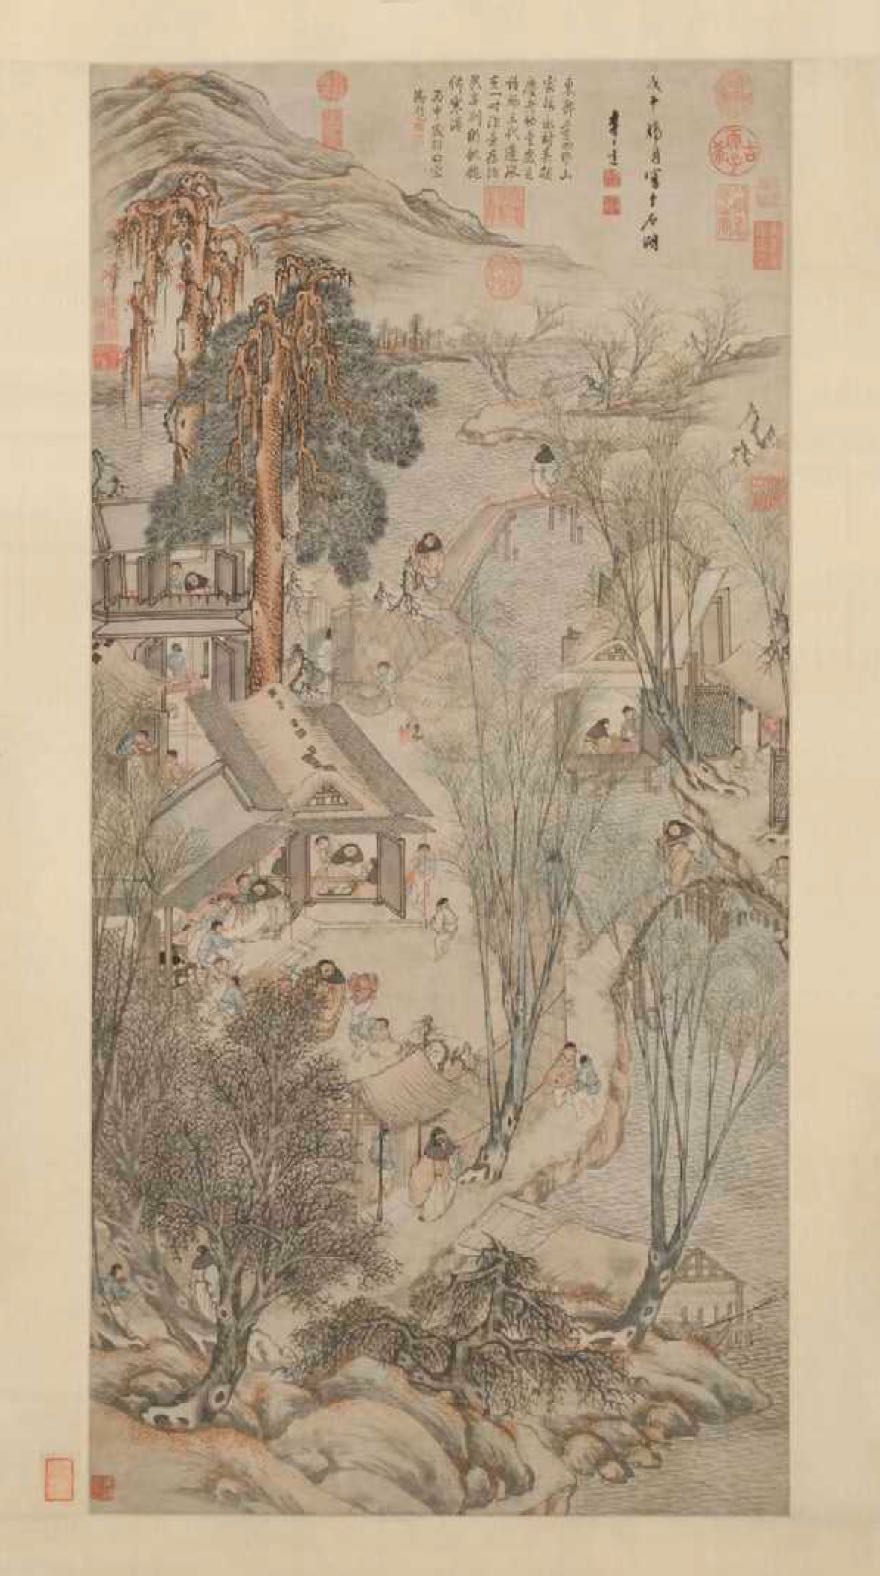 《岁朝村庆图 》，李士达，1618年，北京故宫博物院